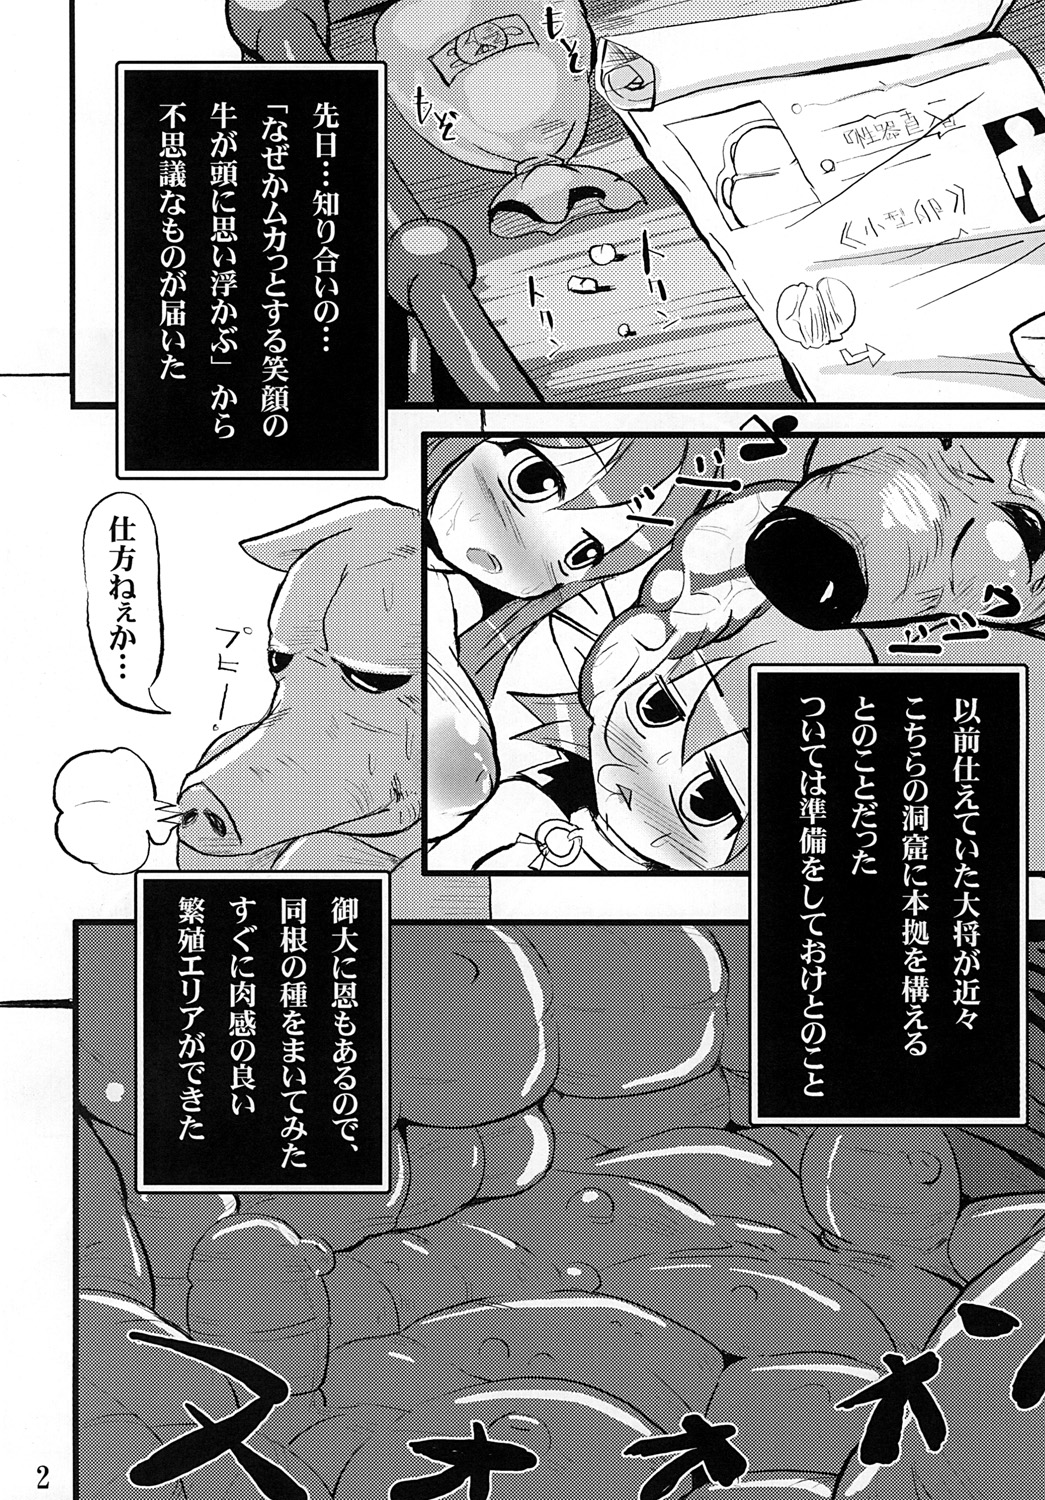 [Hakusyoku Miminagaten] Chaos 2 page 3 full